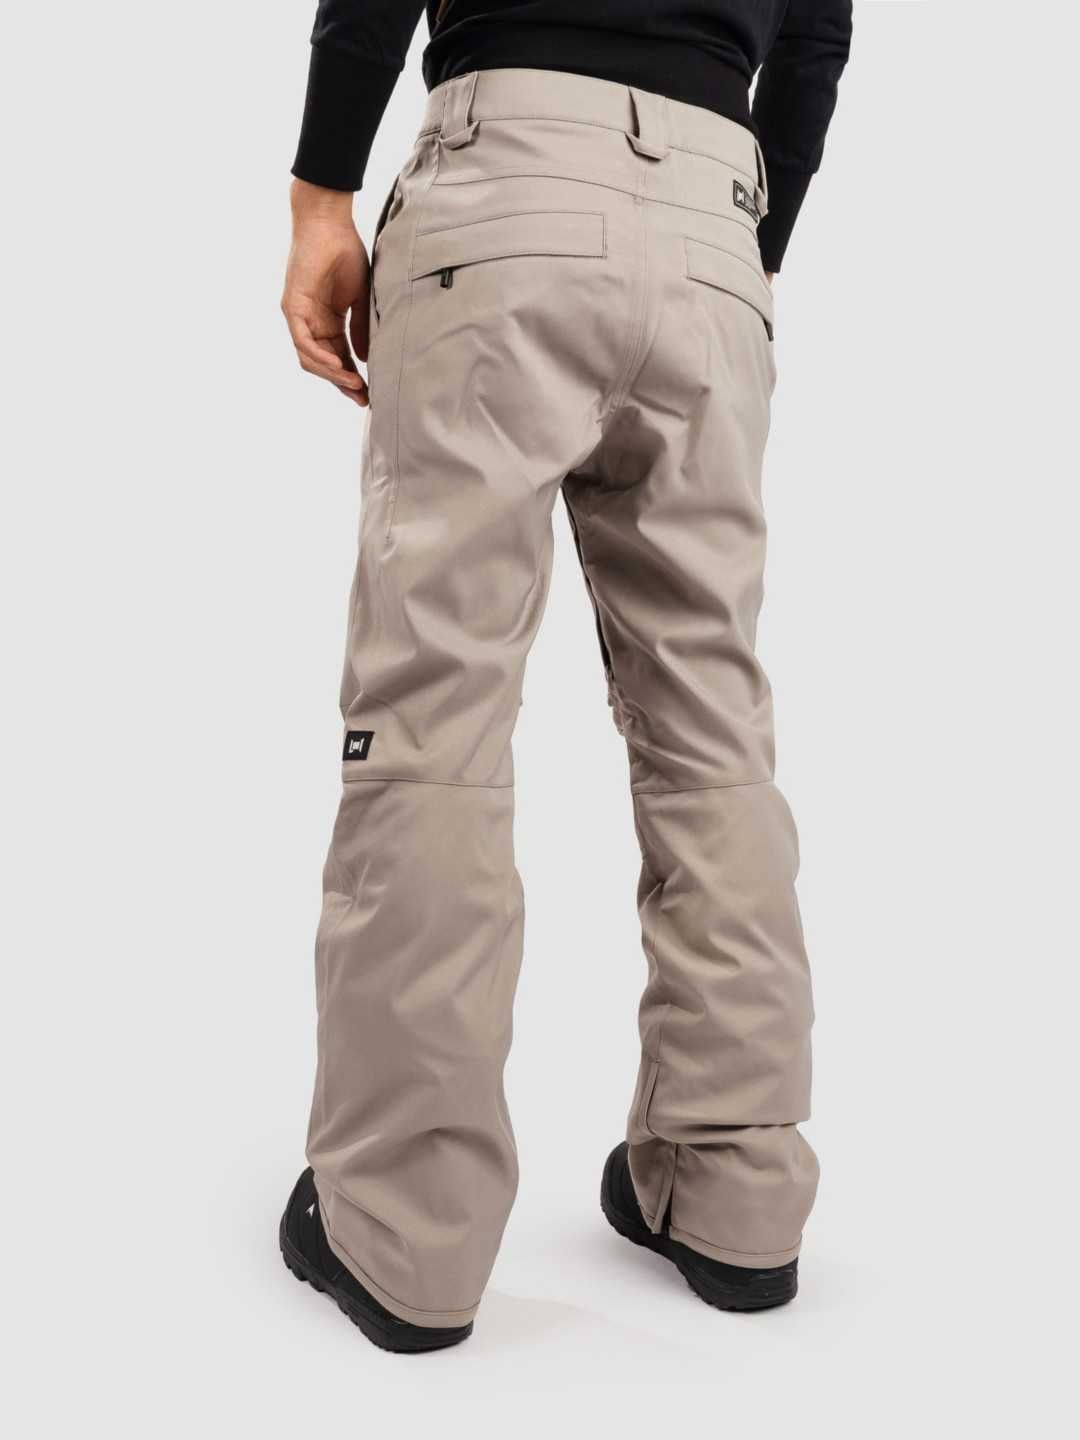 L1 Slim Chino 20k S/M/L/XL нов, оригинален мъжки ски/сноуборд панталон